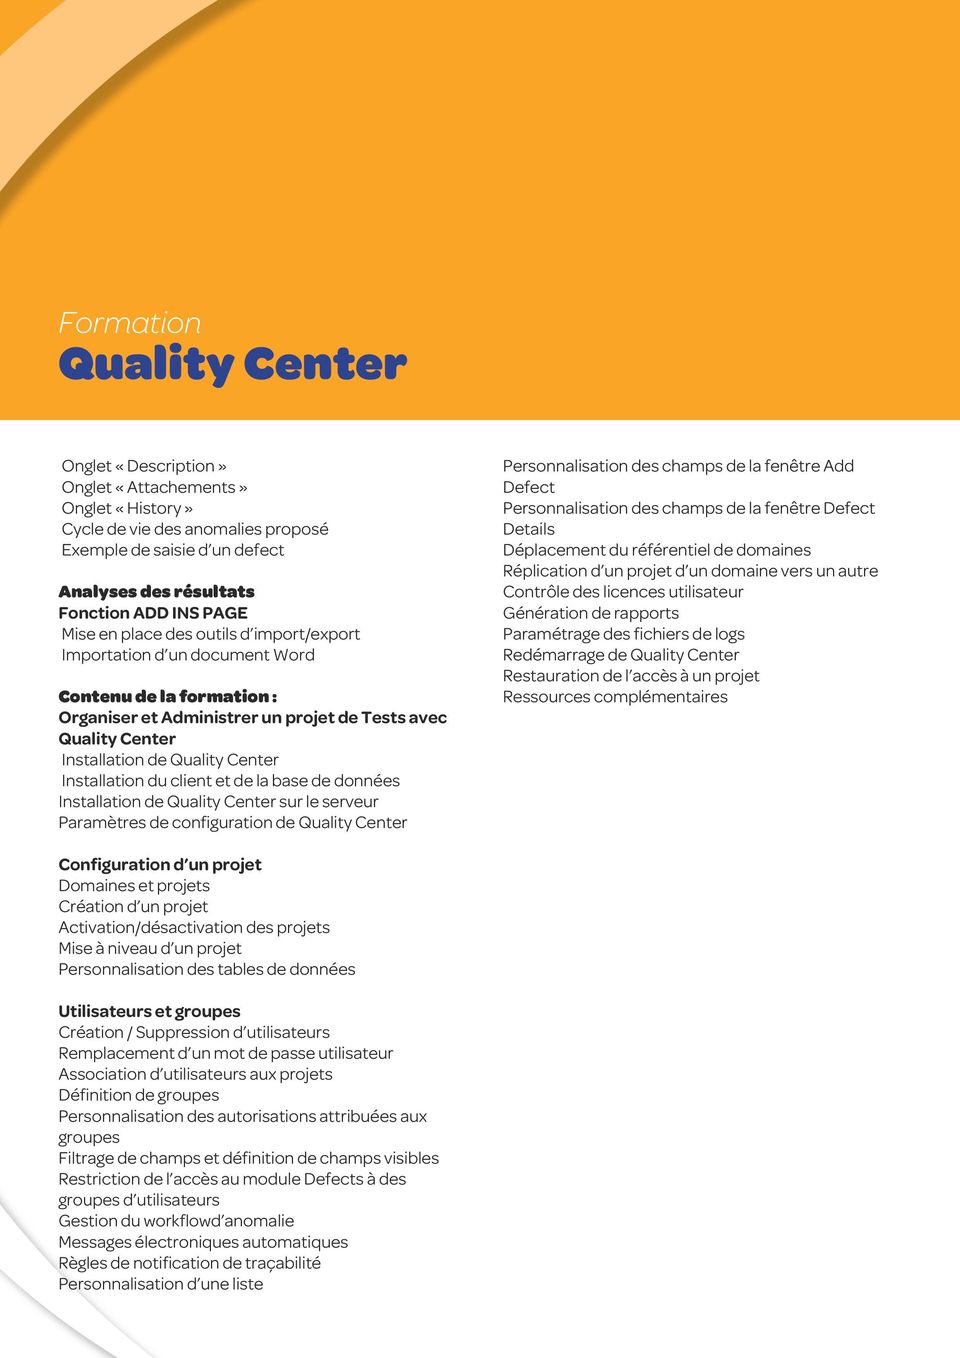 client et de la base de données Installation de Quality Center sur le serveur Paramètres de configuration de Quality Center Personnalisation des champs de la fenêtre Add Defect Personnalisation des